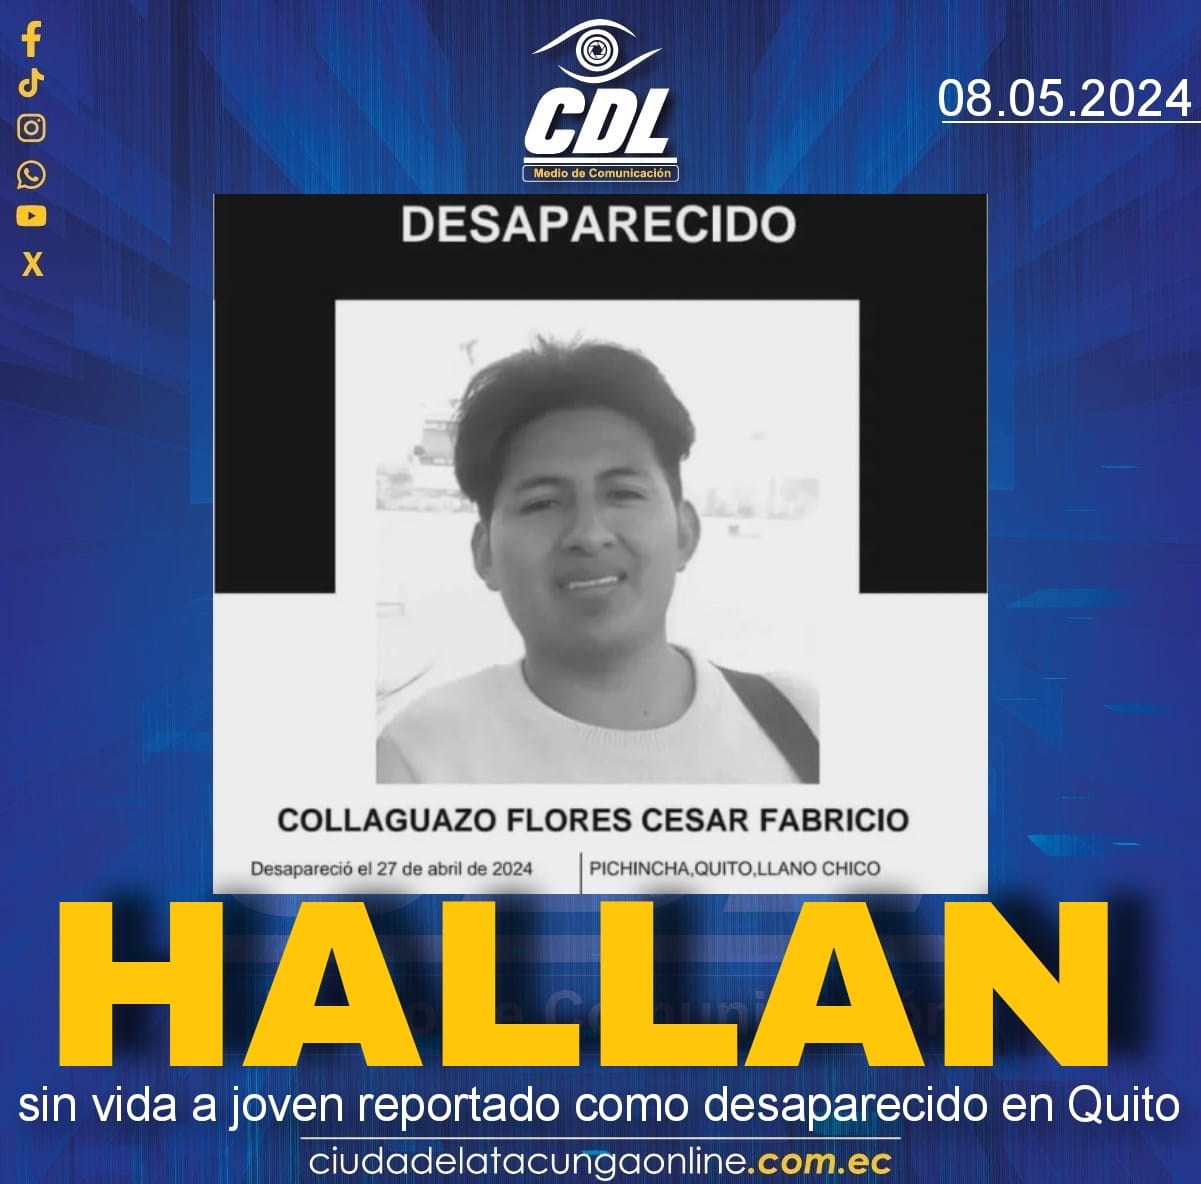 Hallan sin vida a joven reportado como desaparecido en Quito